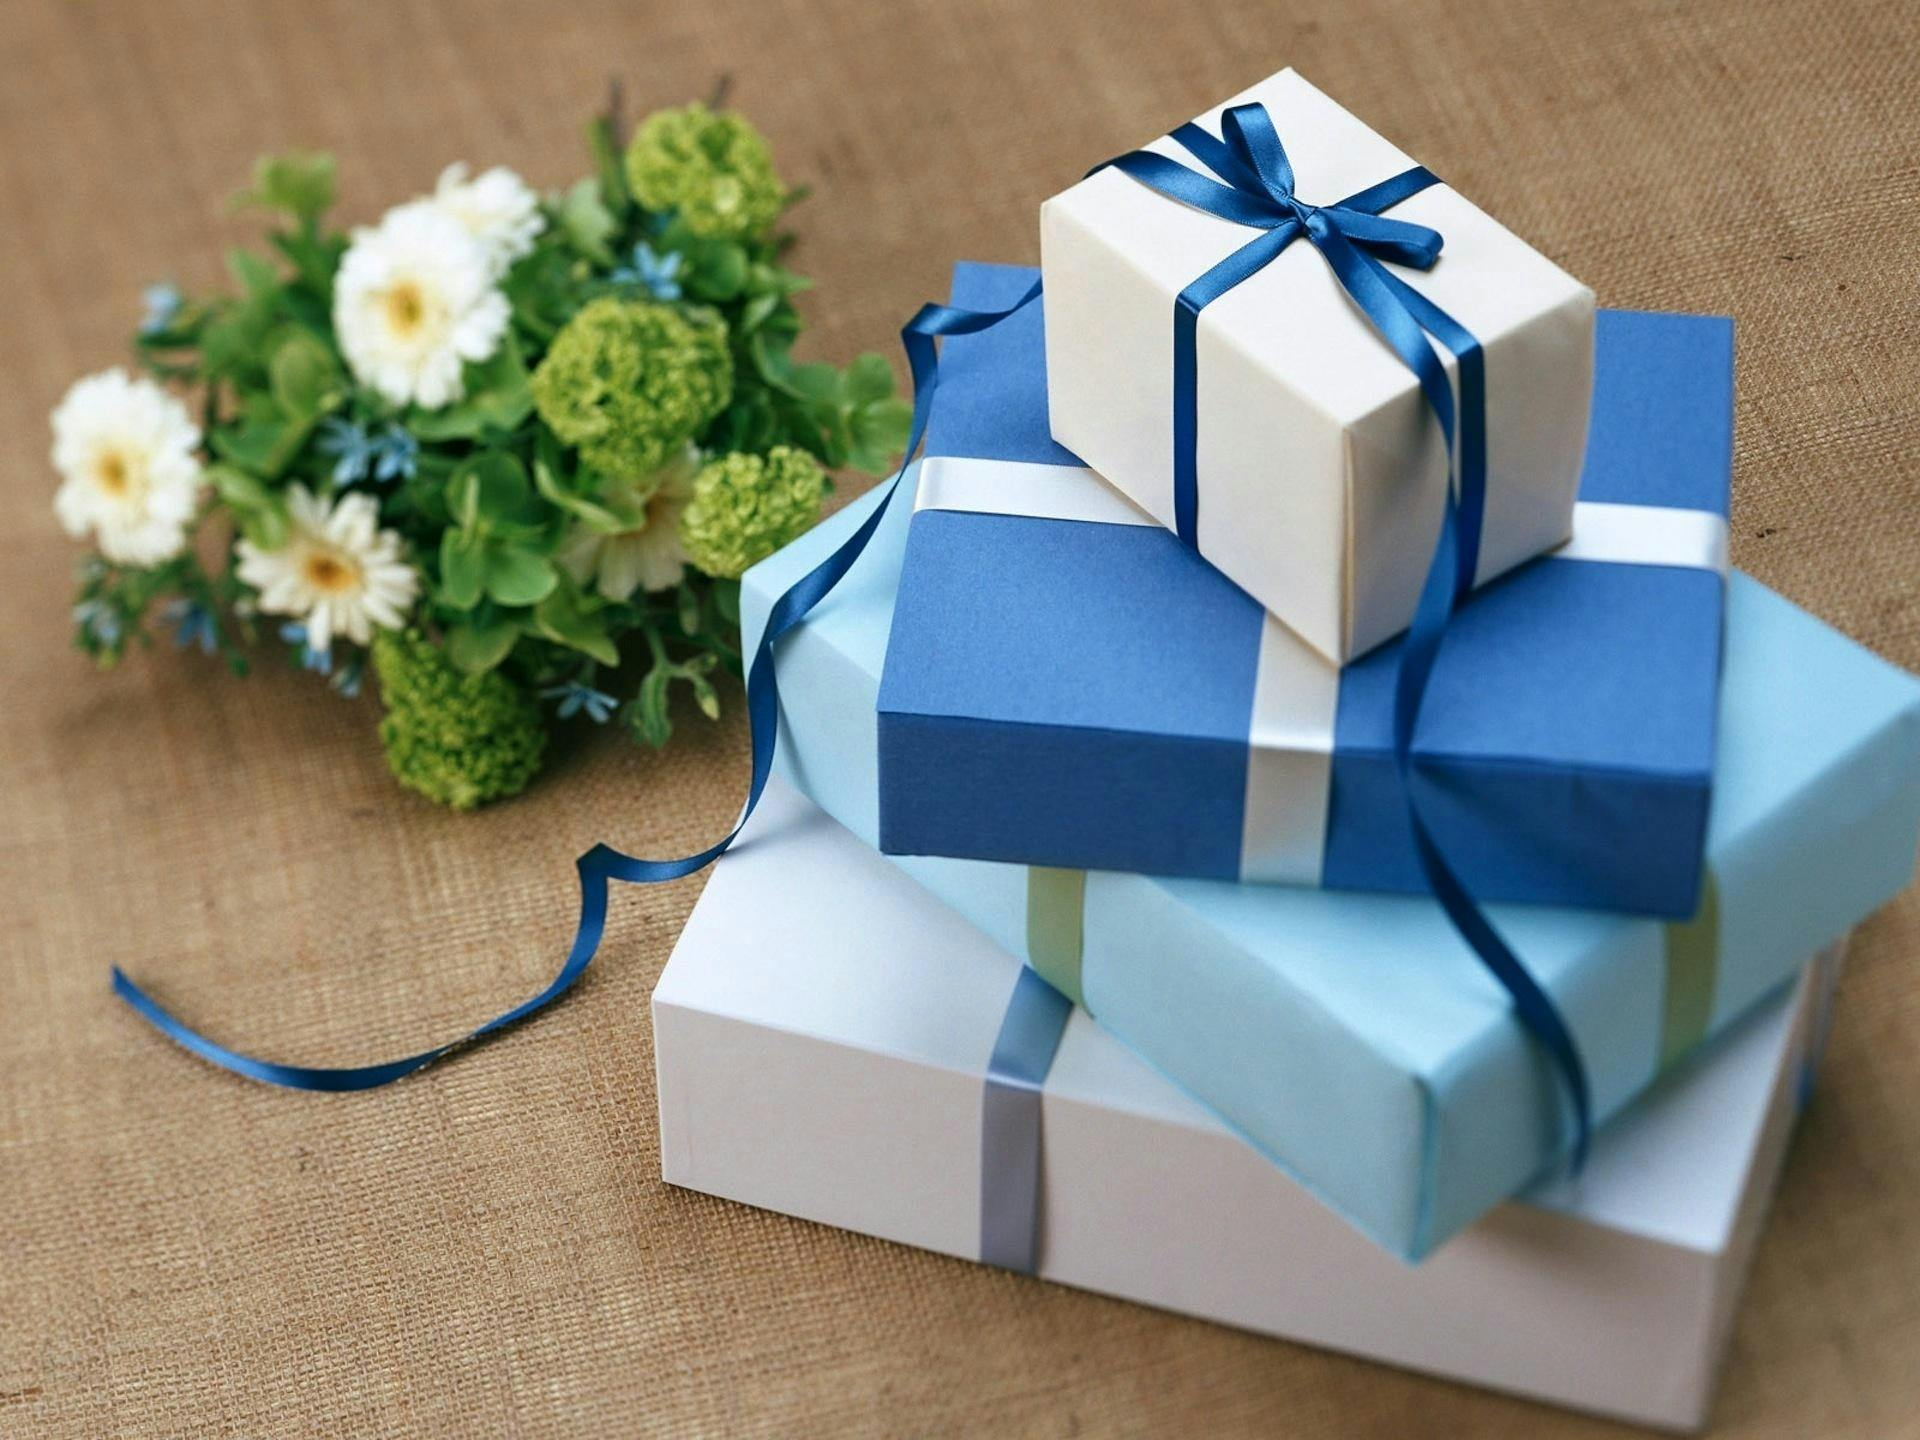 Gestapelte Geschenkboxen | Quelle: Pexels